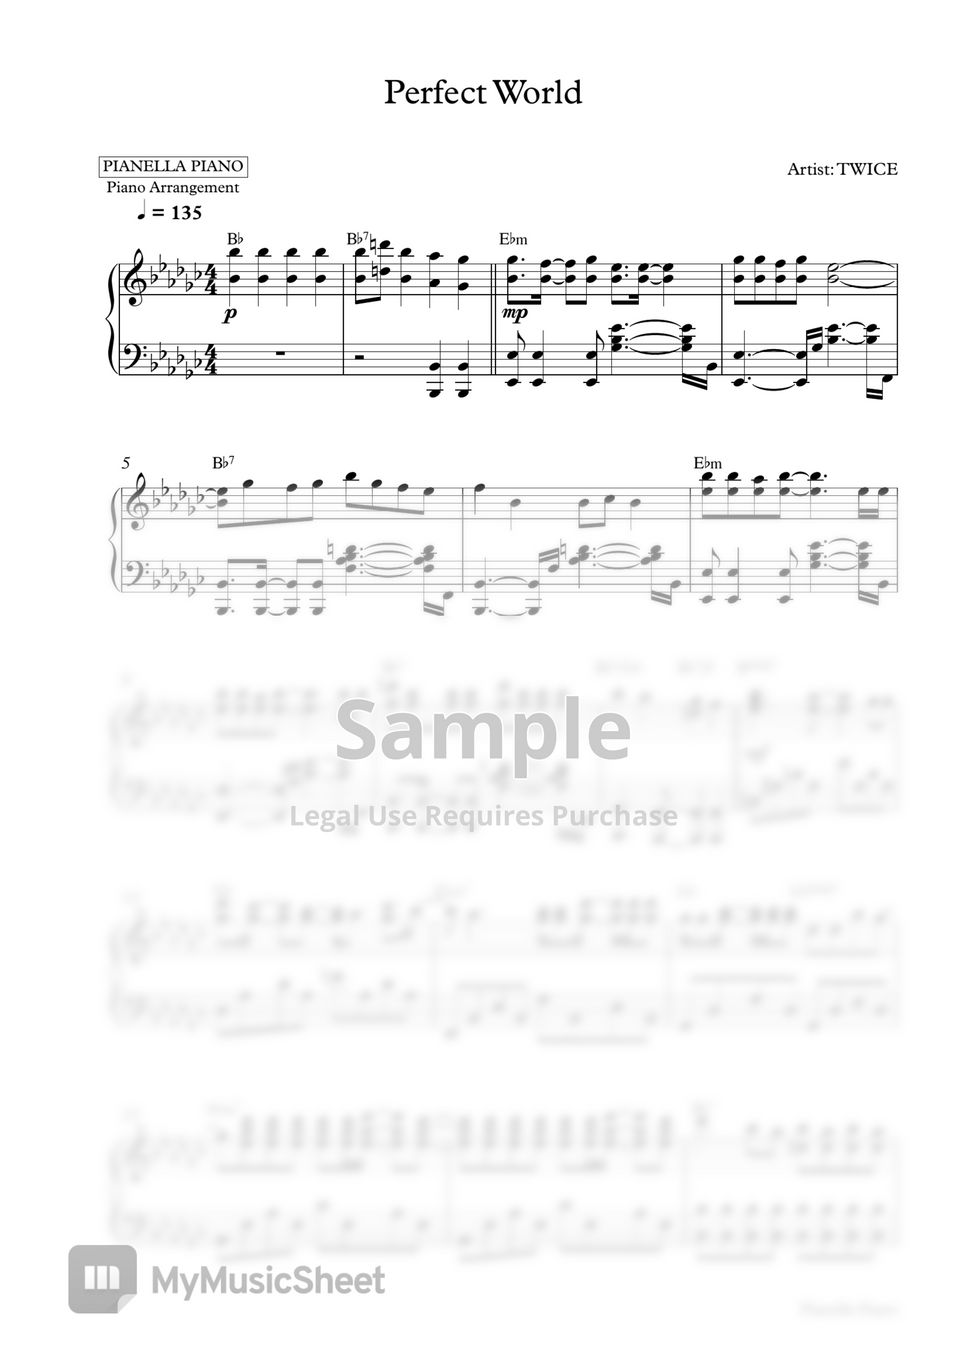 TWICE - Perfect World (Piano Sheet) by Pianella Piano